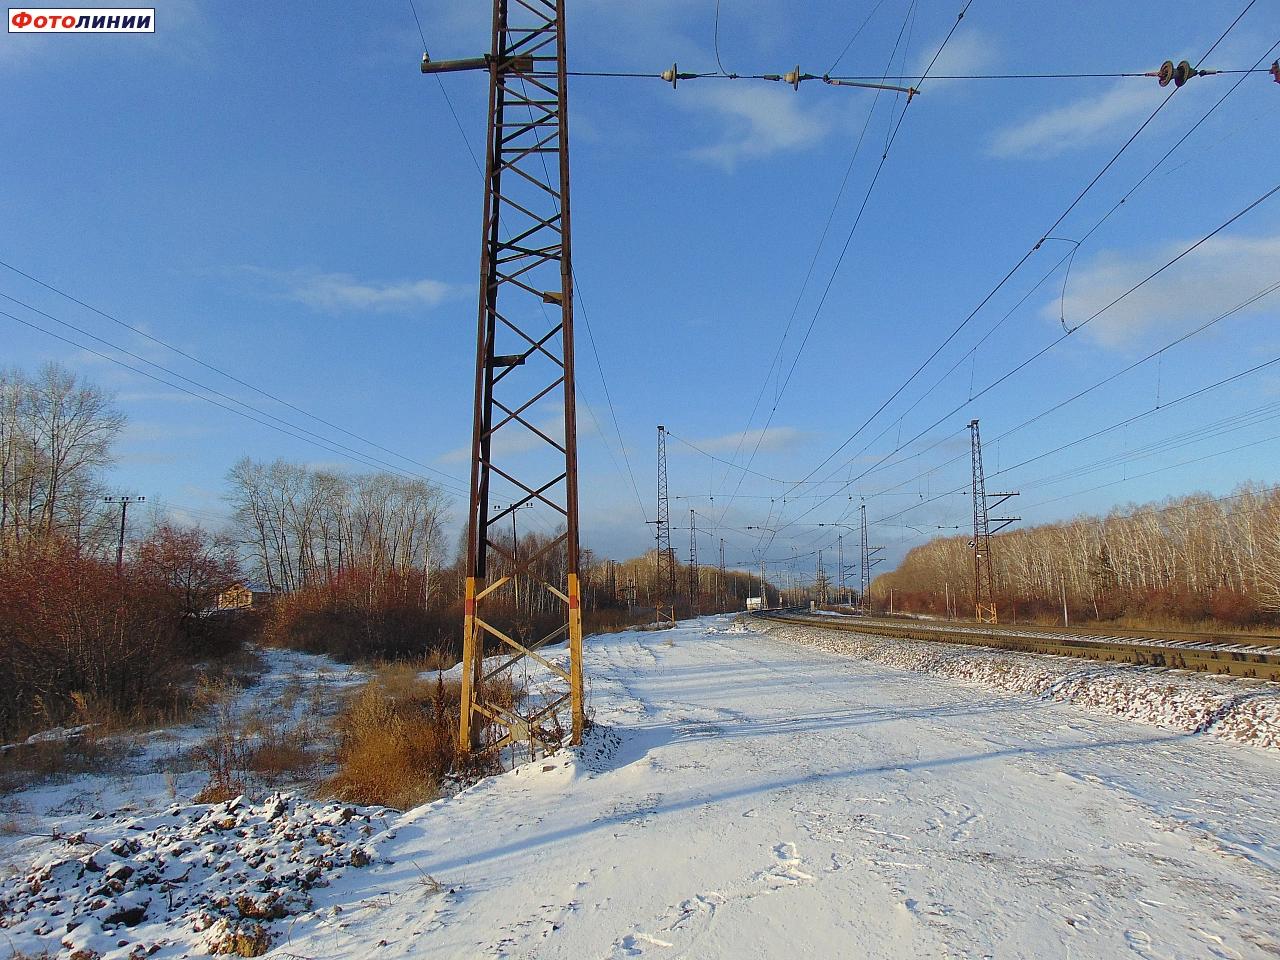 Вид в сторону станции Бишкиль. Влево отходит насыпь разобранного подъездного пути к тяговой подстанции